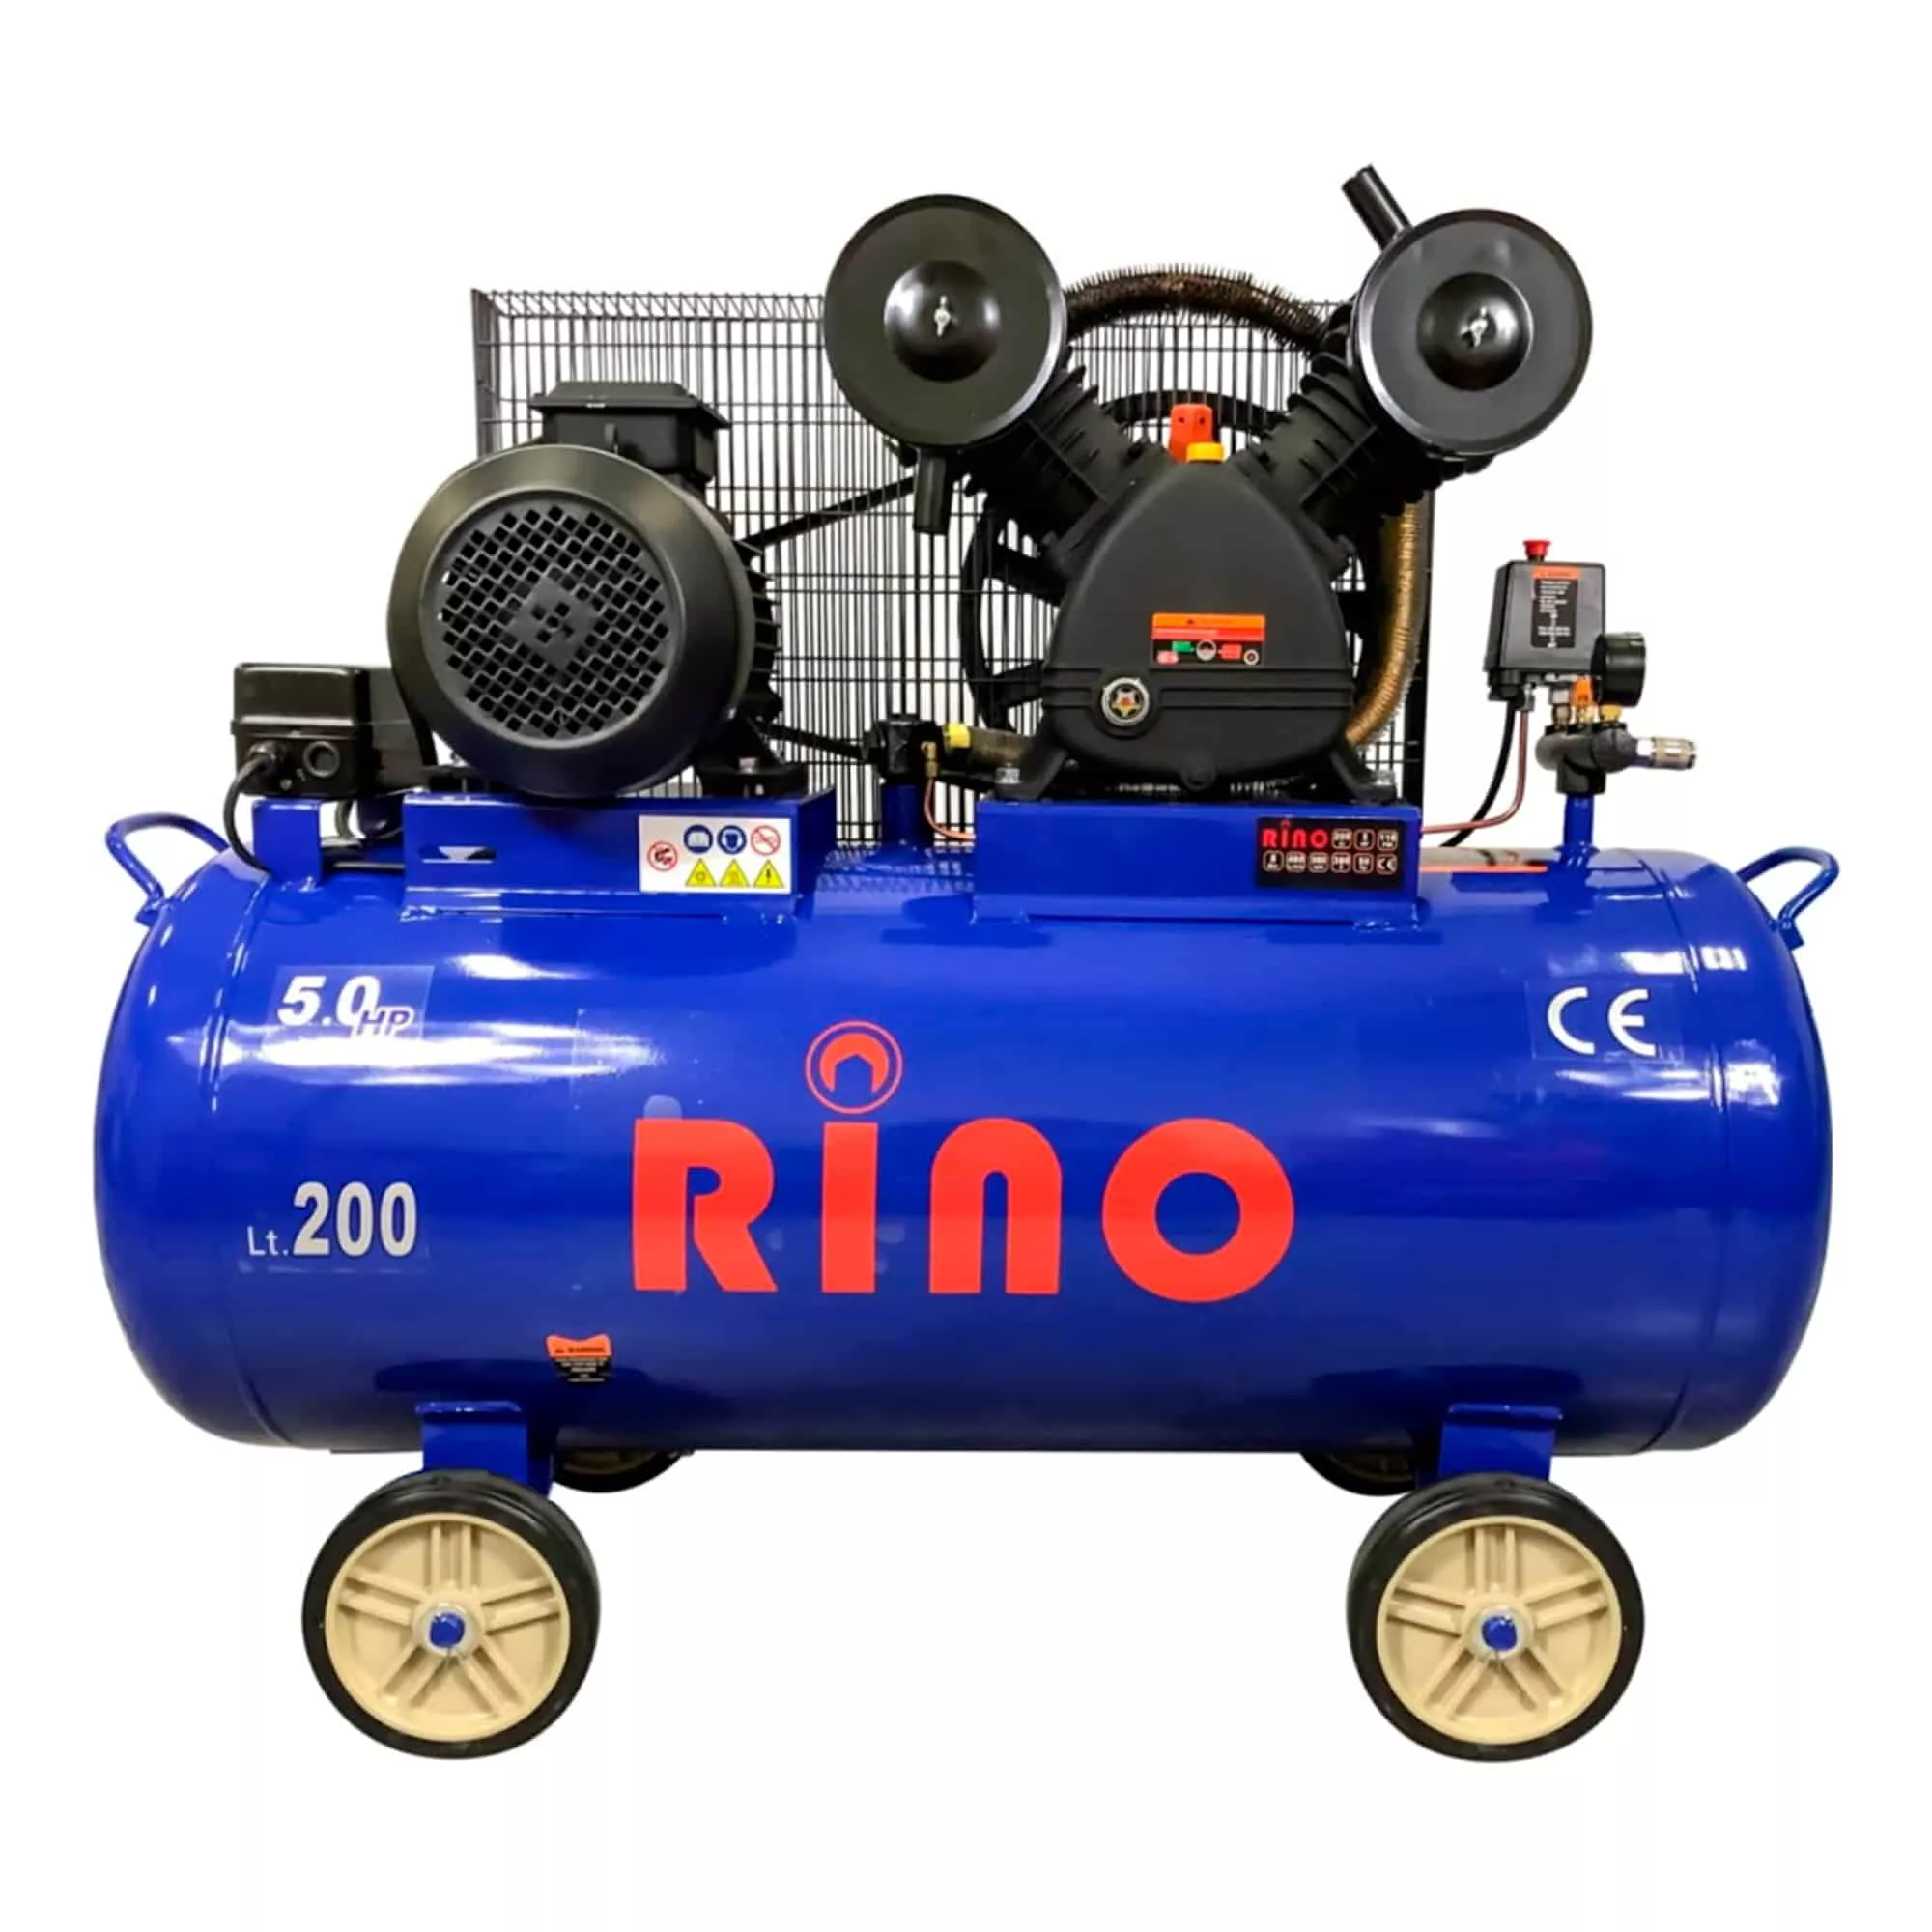 Компрессор передвижной Rino (HM-V-0.48/200L)